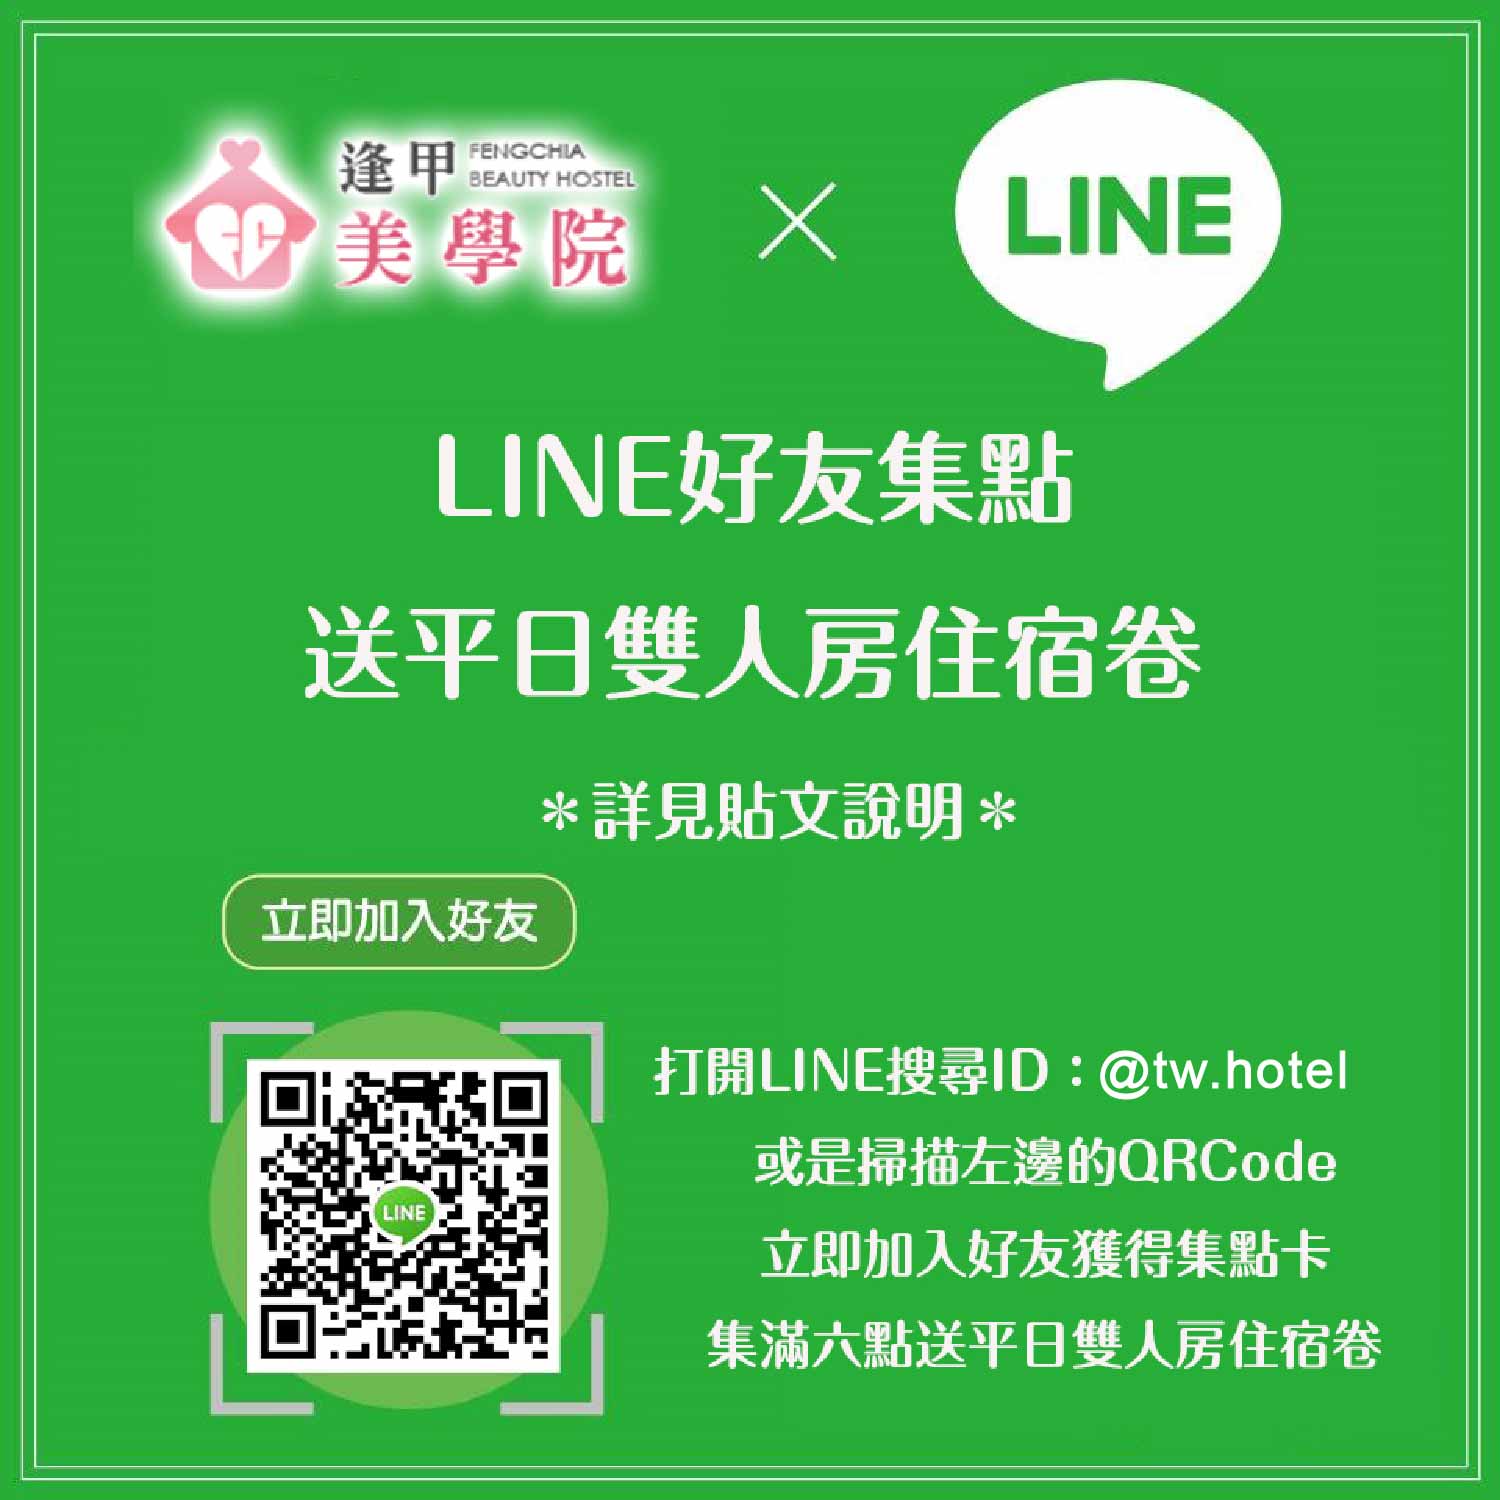 加入LINE@好友集点换免费住宿一晚(平日双人房)